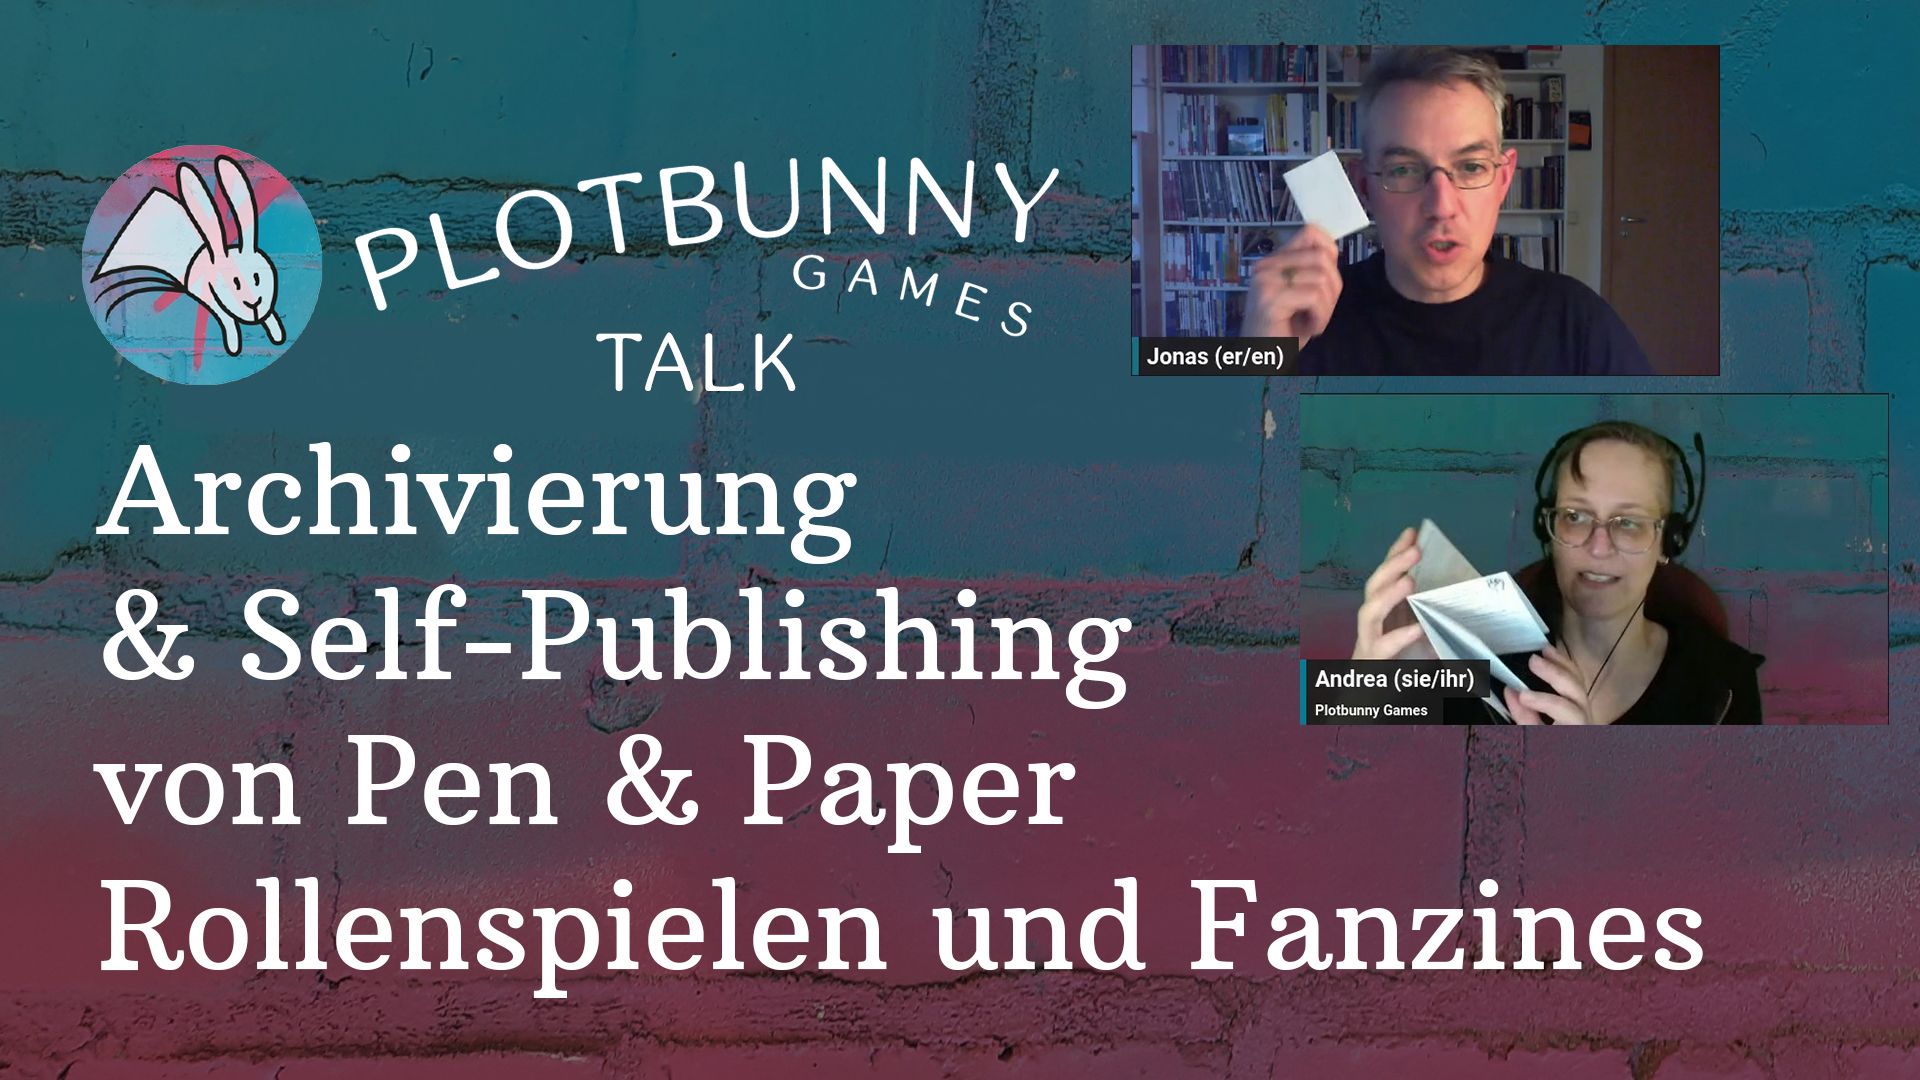 Thumbnail des Videos "Archivierung und Self-Publishing von Pen & Paper Rollenspielen und Fanzines" mit Screenshot von Jonas und Andrea.